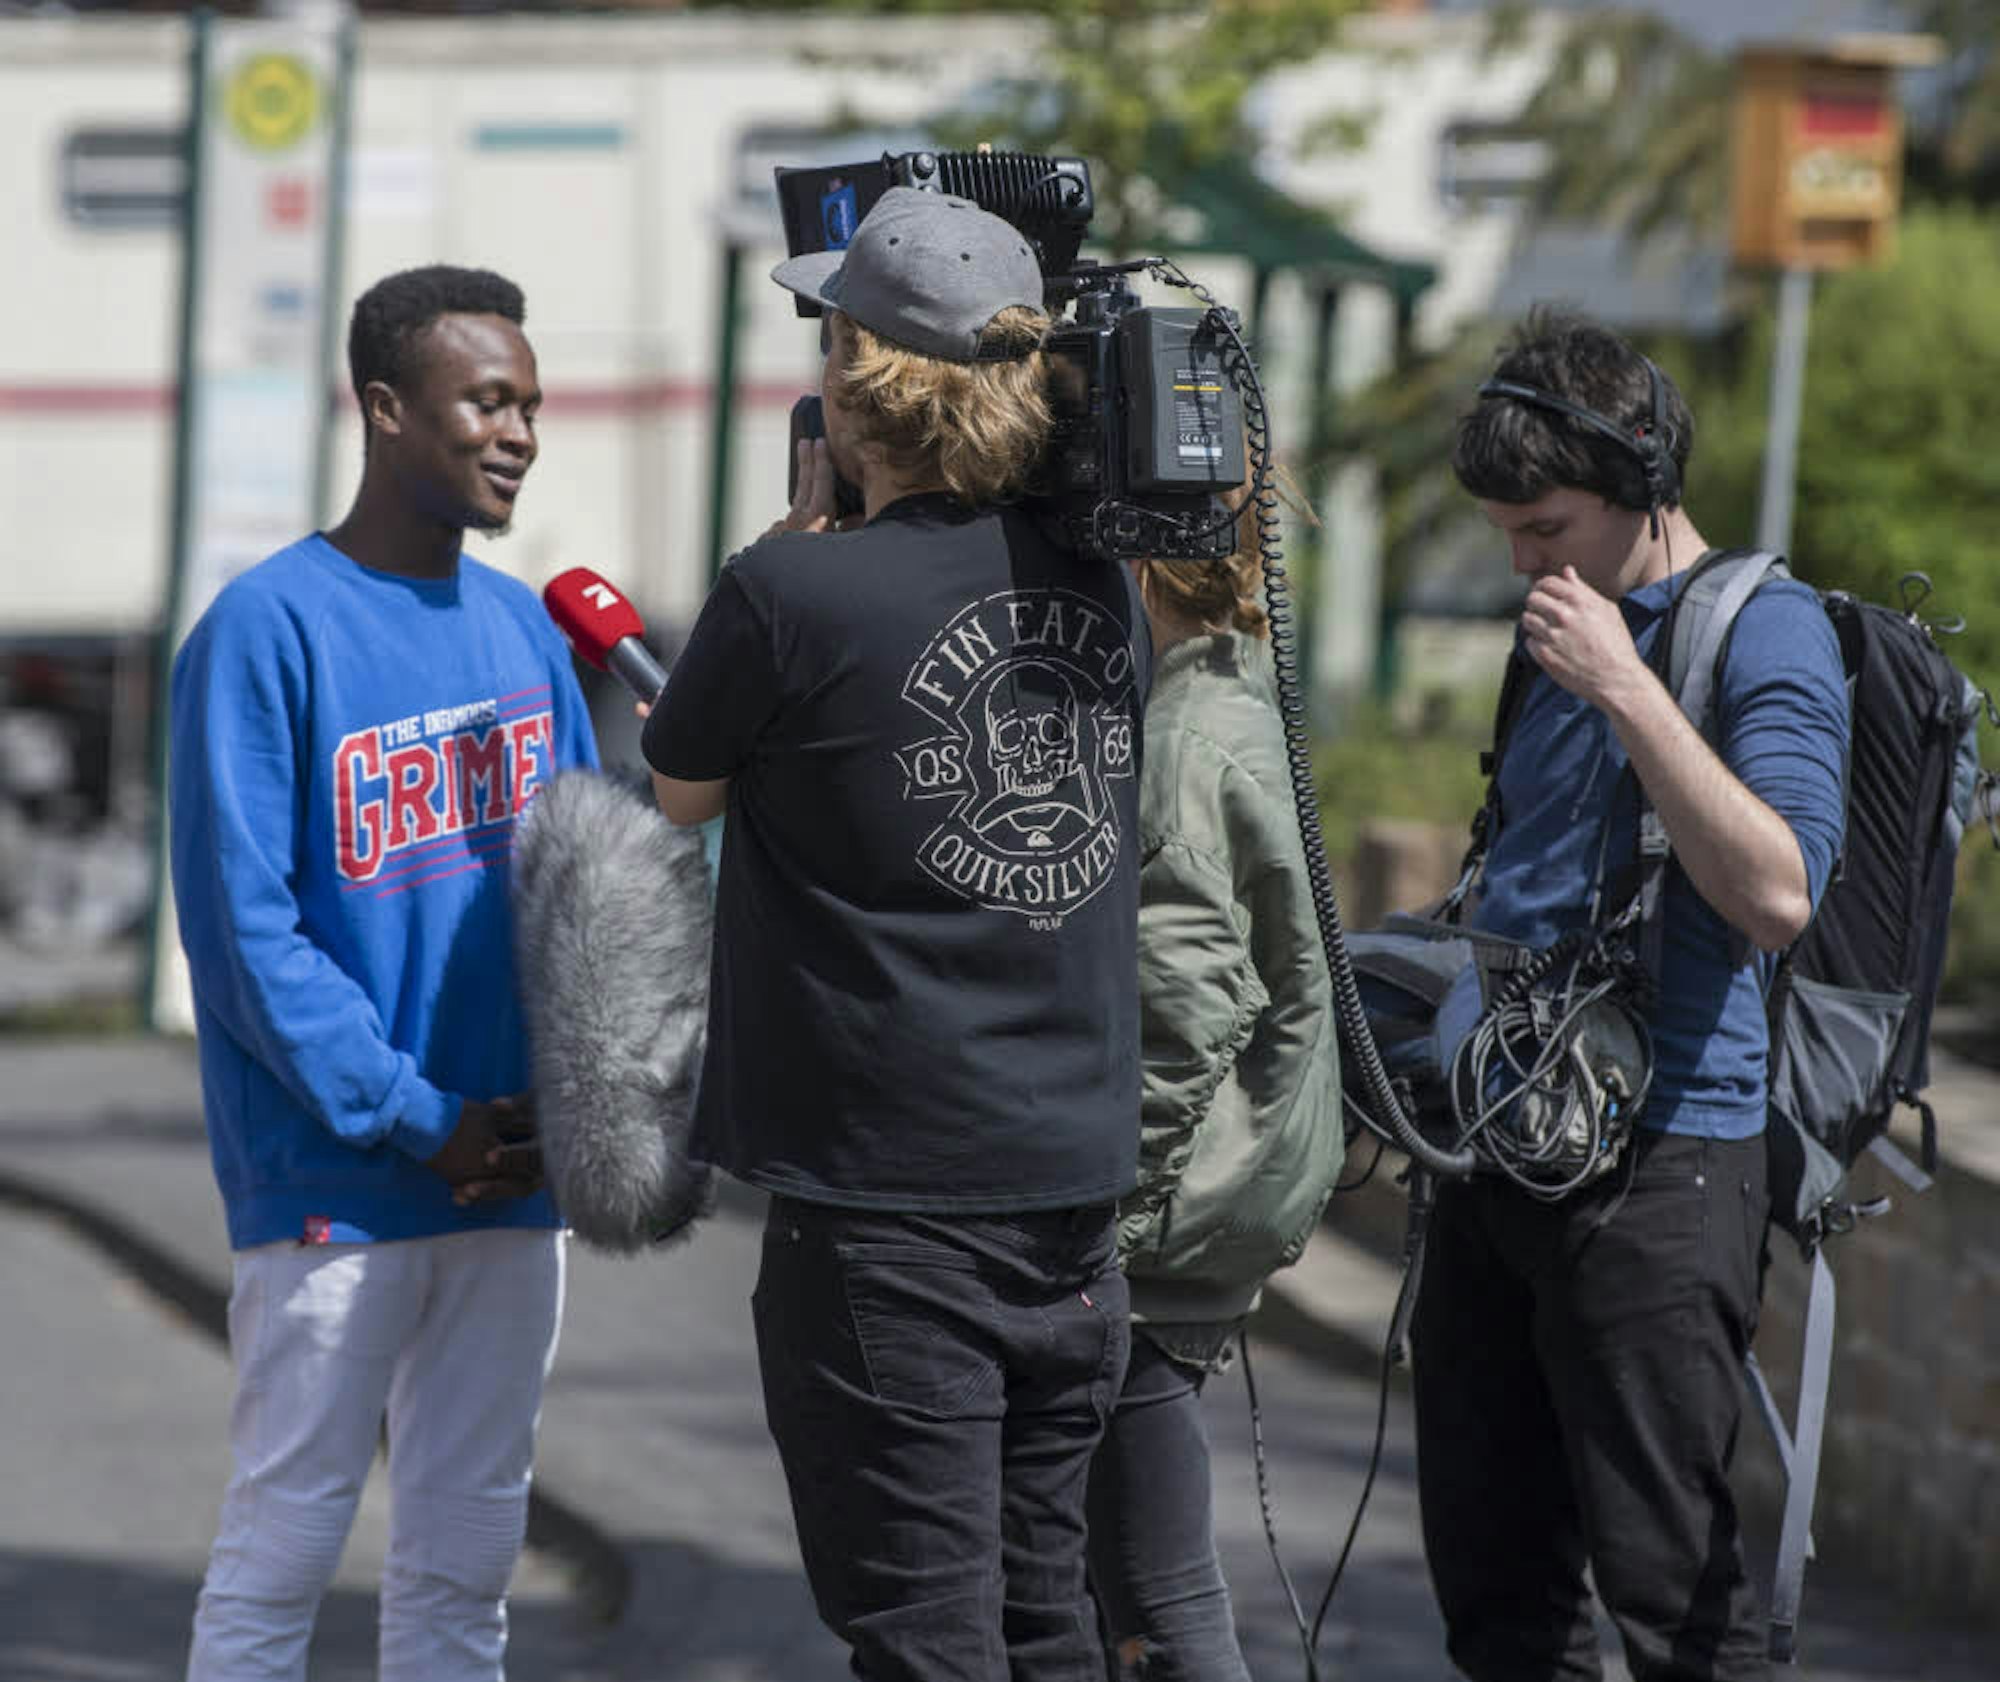 Bevor der Run auf das Haus begann, führte die TV-Crew Interviews mit einzelnen Teilnehmern. 